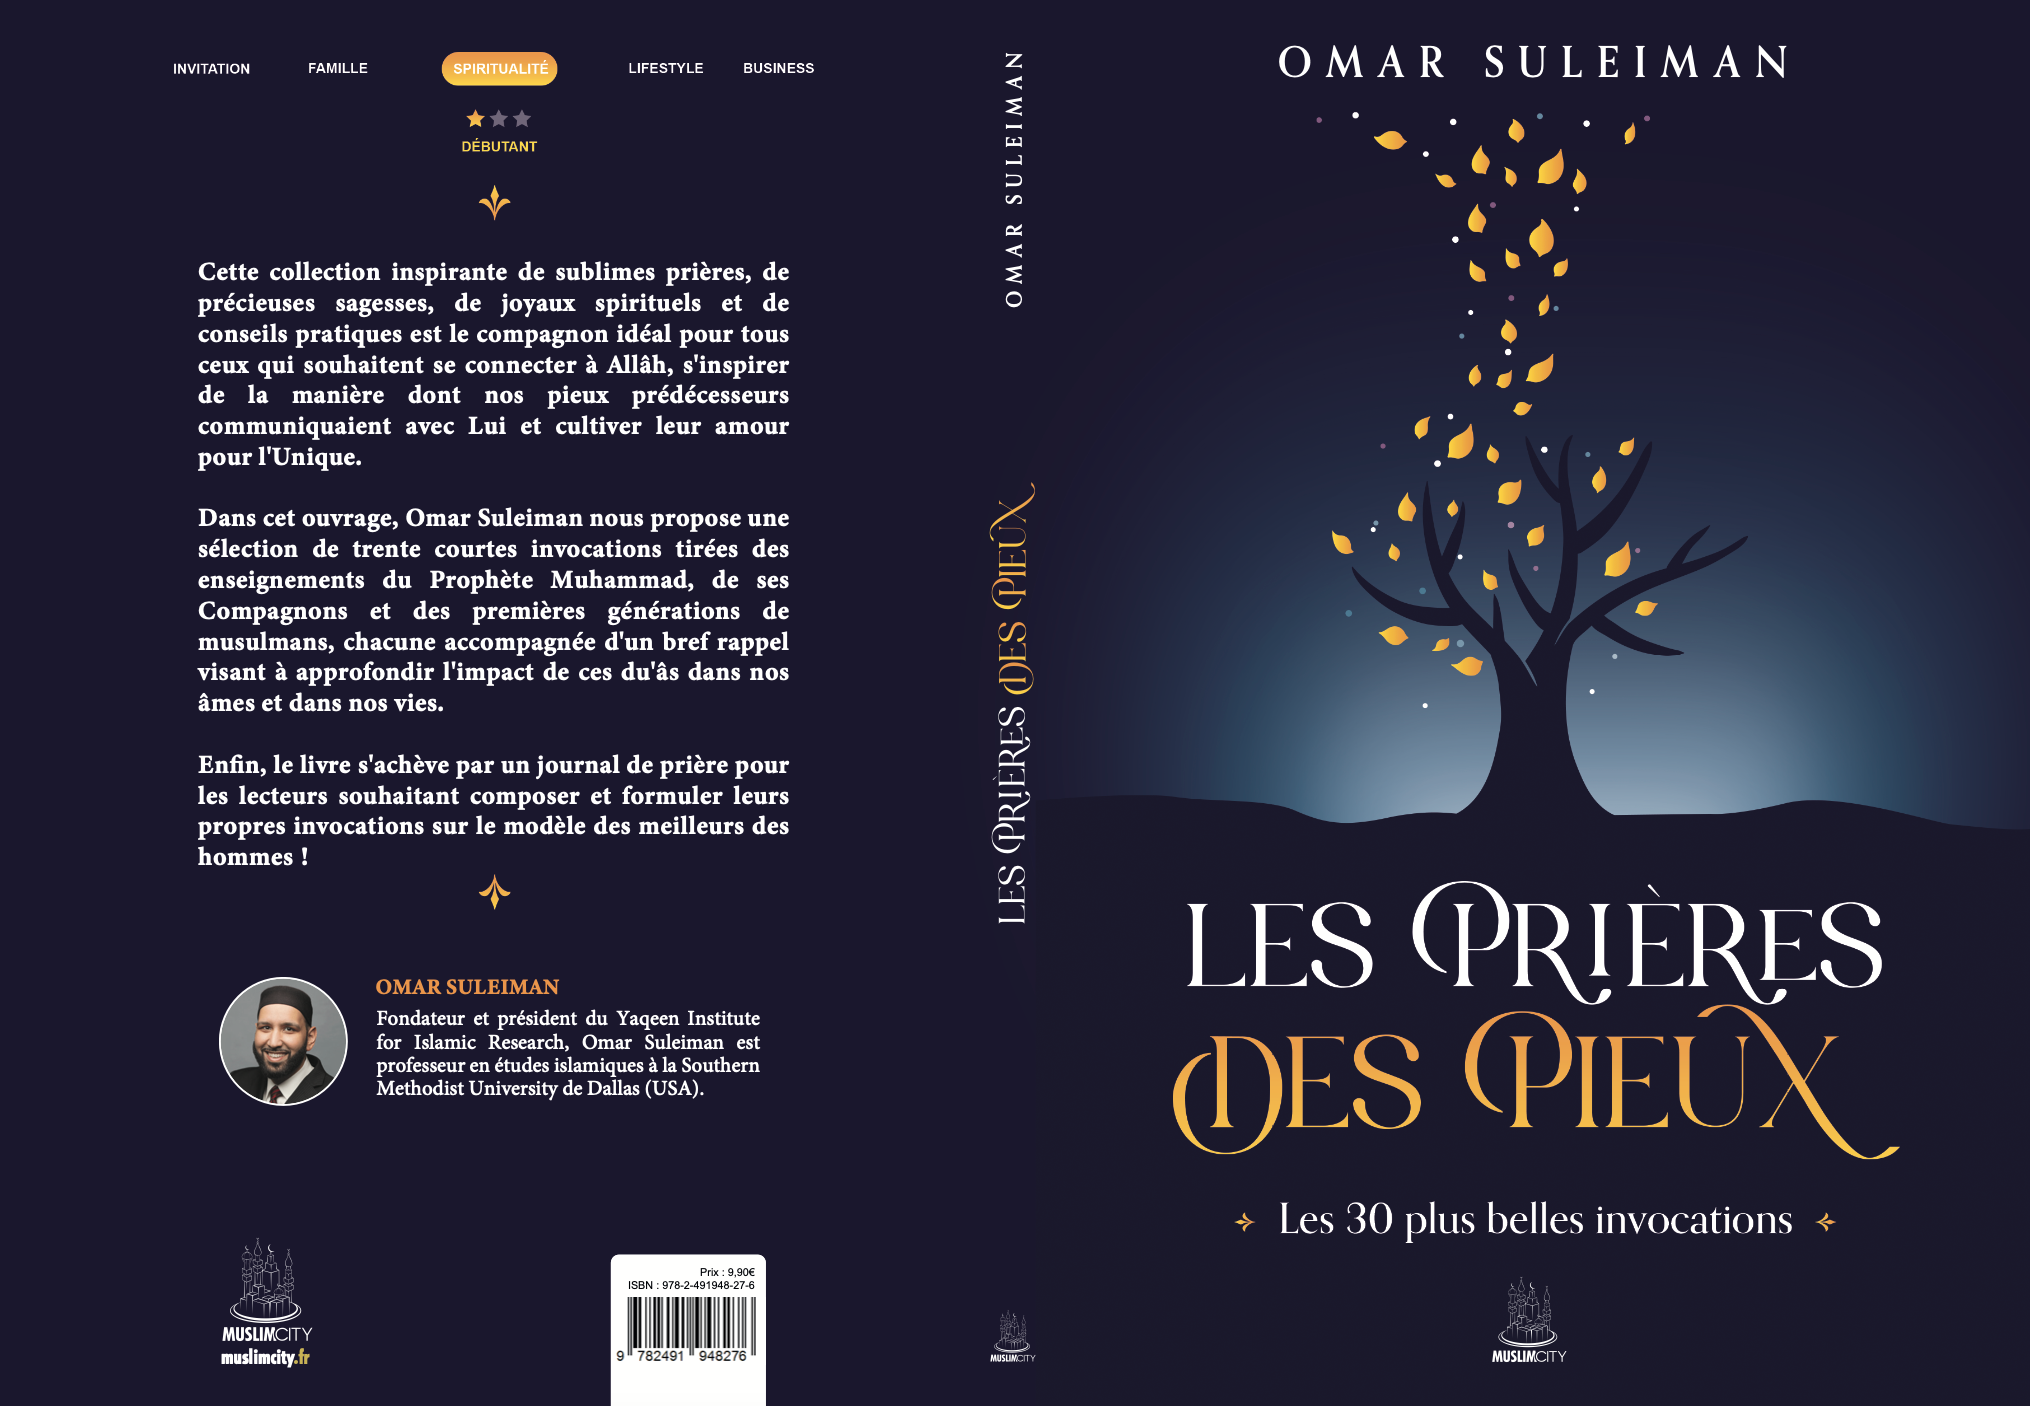 Les prières des pieux | Les 30 plus belles invocations d'Omar Suleiman - Editions MuslimCity